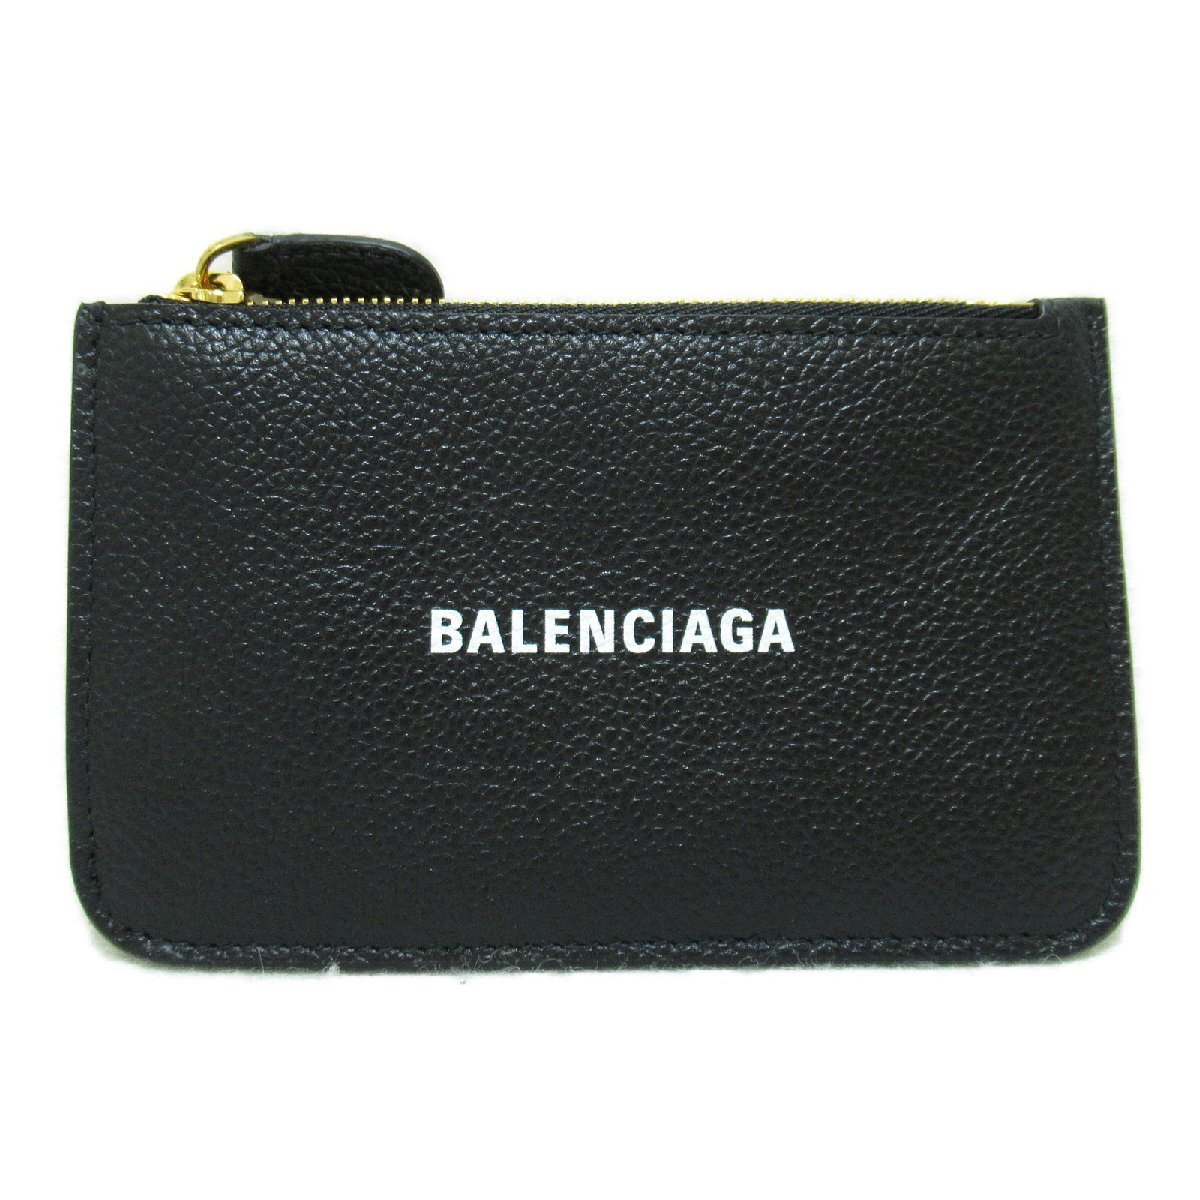 バレンシアガ カードケース&キーポーチ ブランドオフ BALENCIAGA カーフ（牛革） カードケース カーフ メンズ レディース